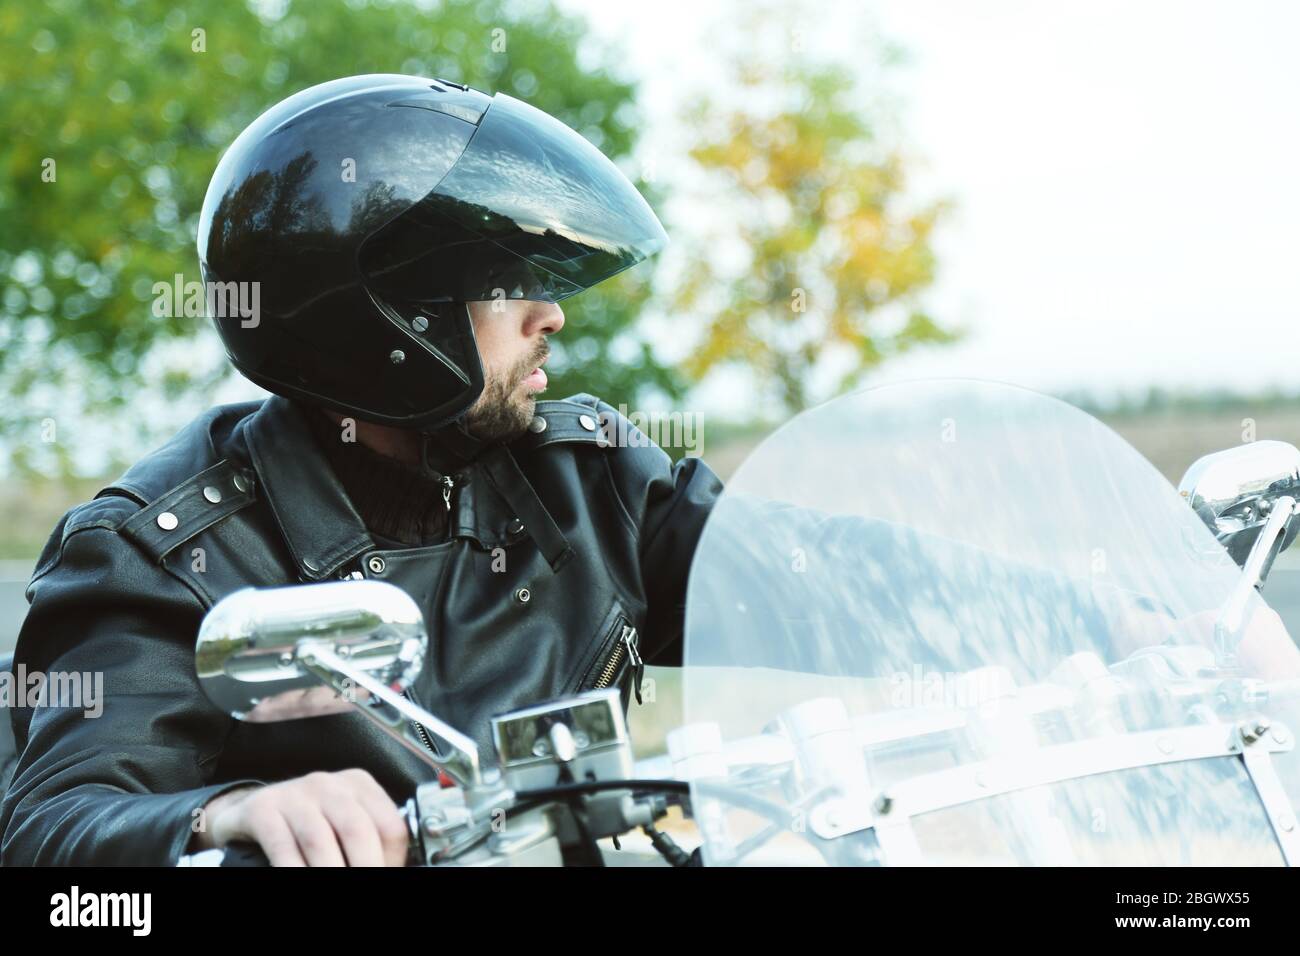 Le Biker homme en casque noir est assis sur le vélo Banque D'Images